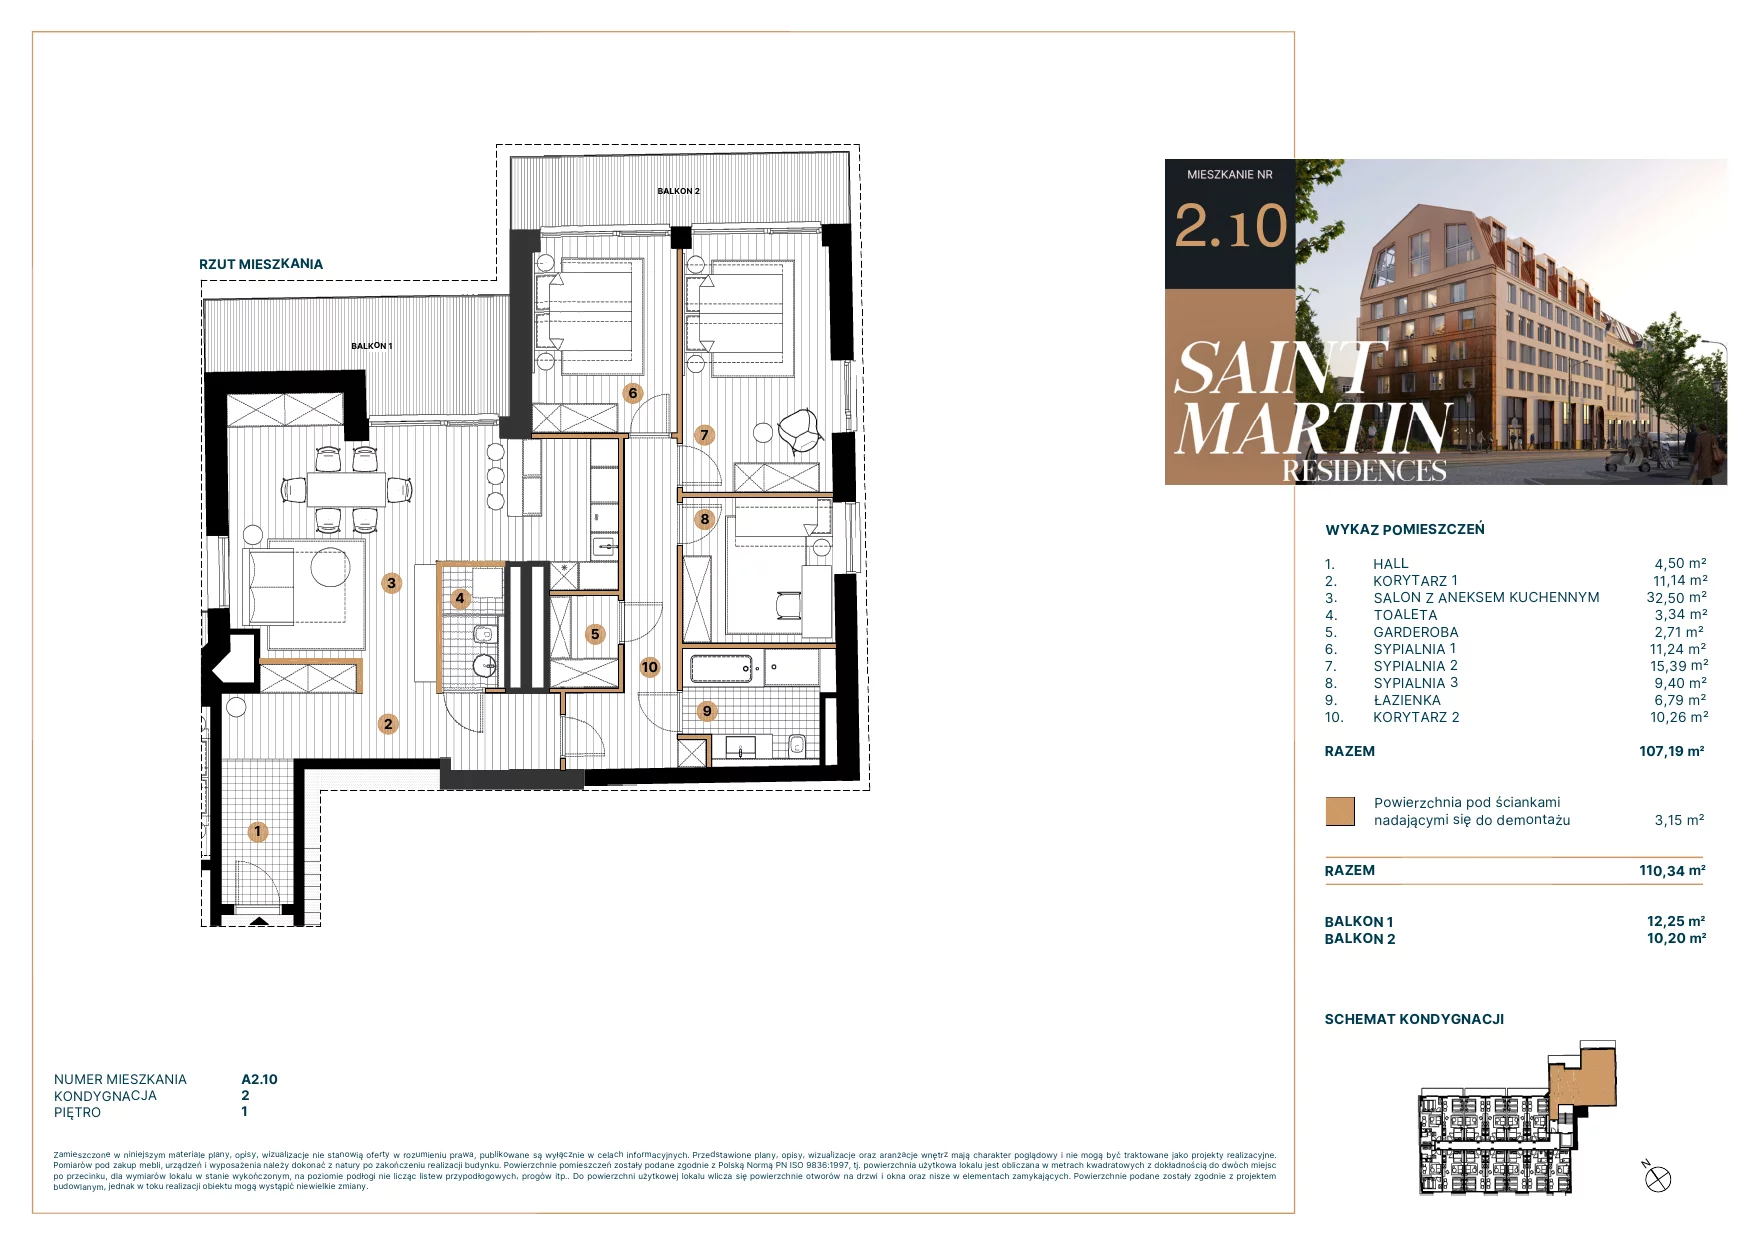 Mieszkanie 107,89 m², piętro 1, oferta nr A2.10, Saint Martin Residences II, Poznań, Stare Miasto, Stare Miasto, ul. Podgórna 7